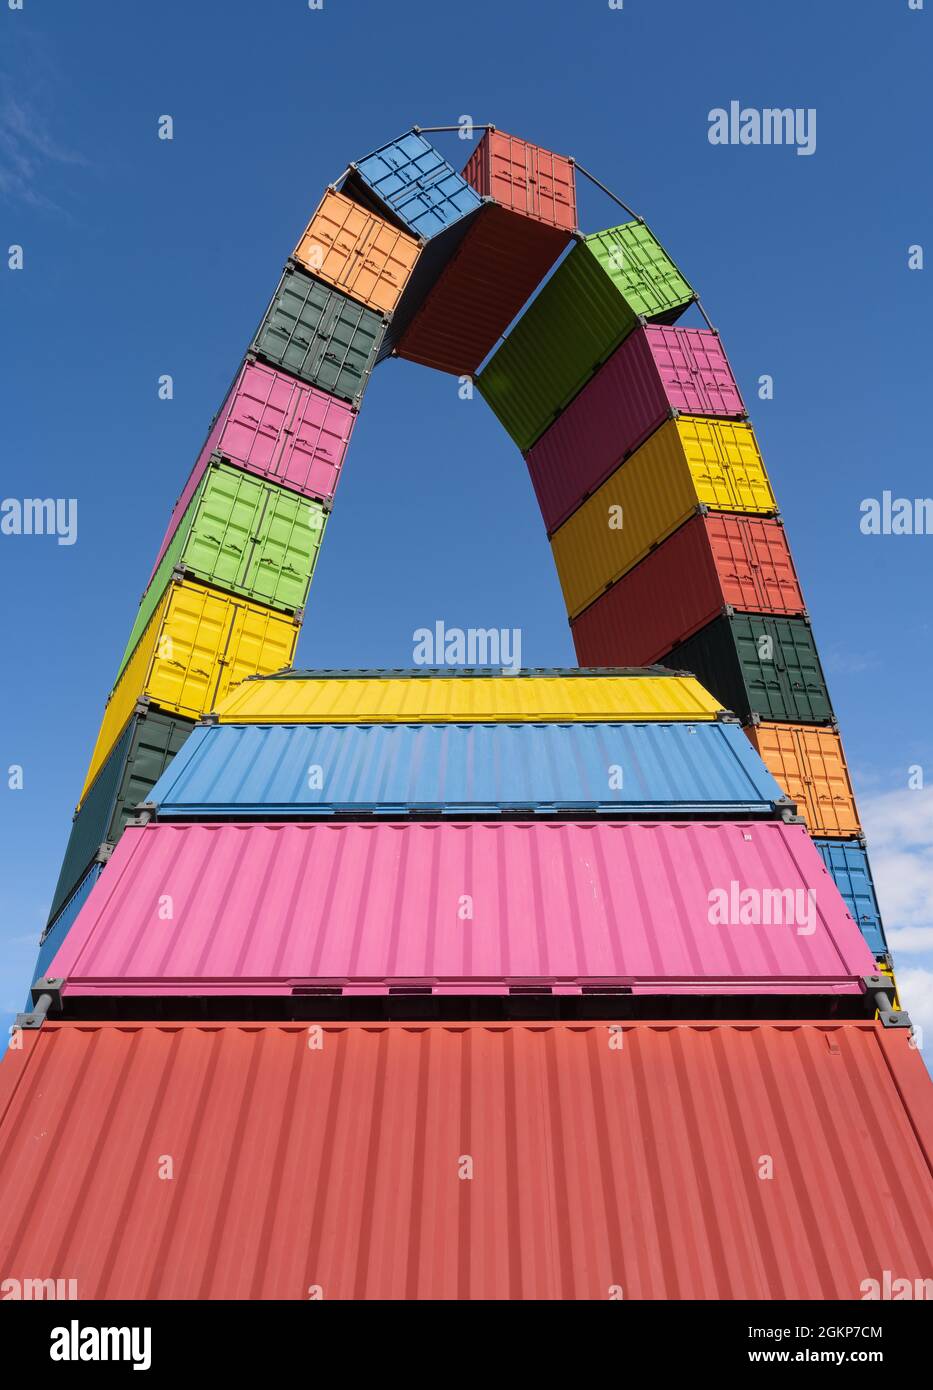 Le Havre, France - 8 août 2021 : installation contemporaine colorée Catene de Containers par Vincent Ganivet dans le port de Southampton du Havre, France, Banque D'Images